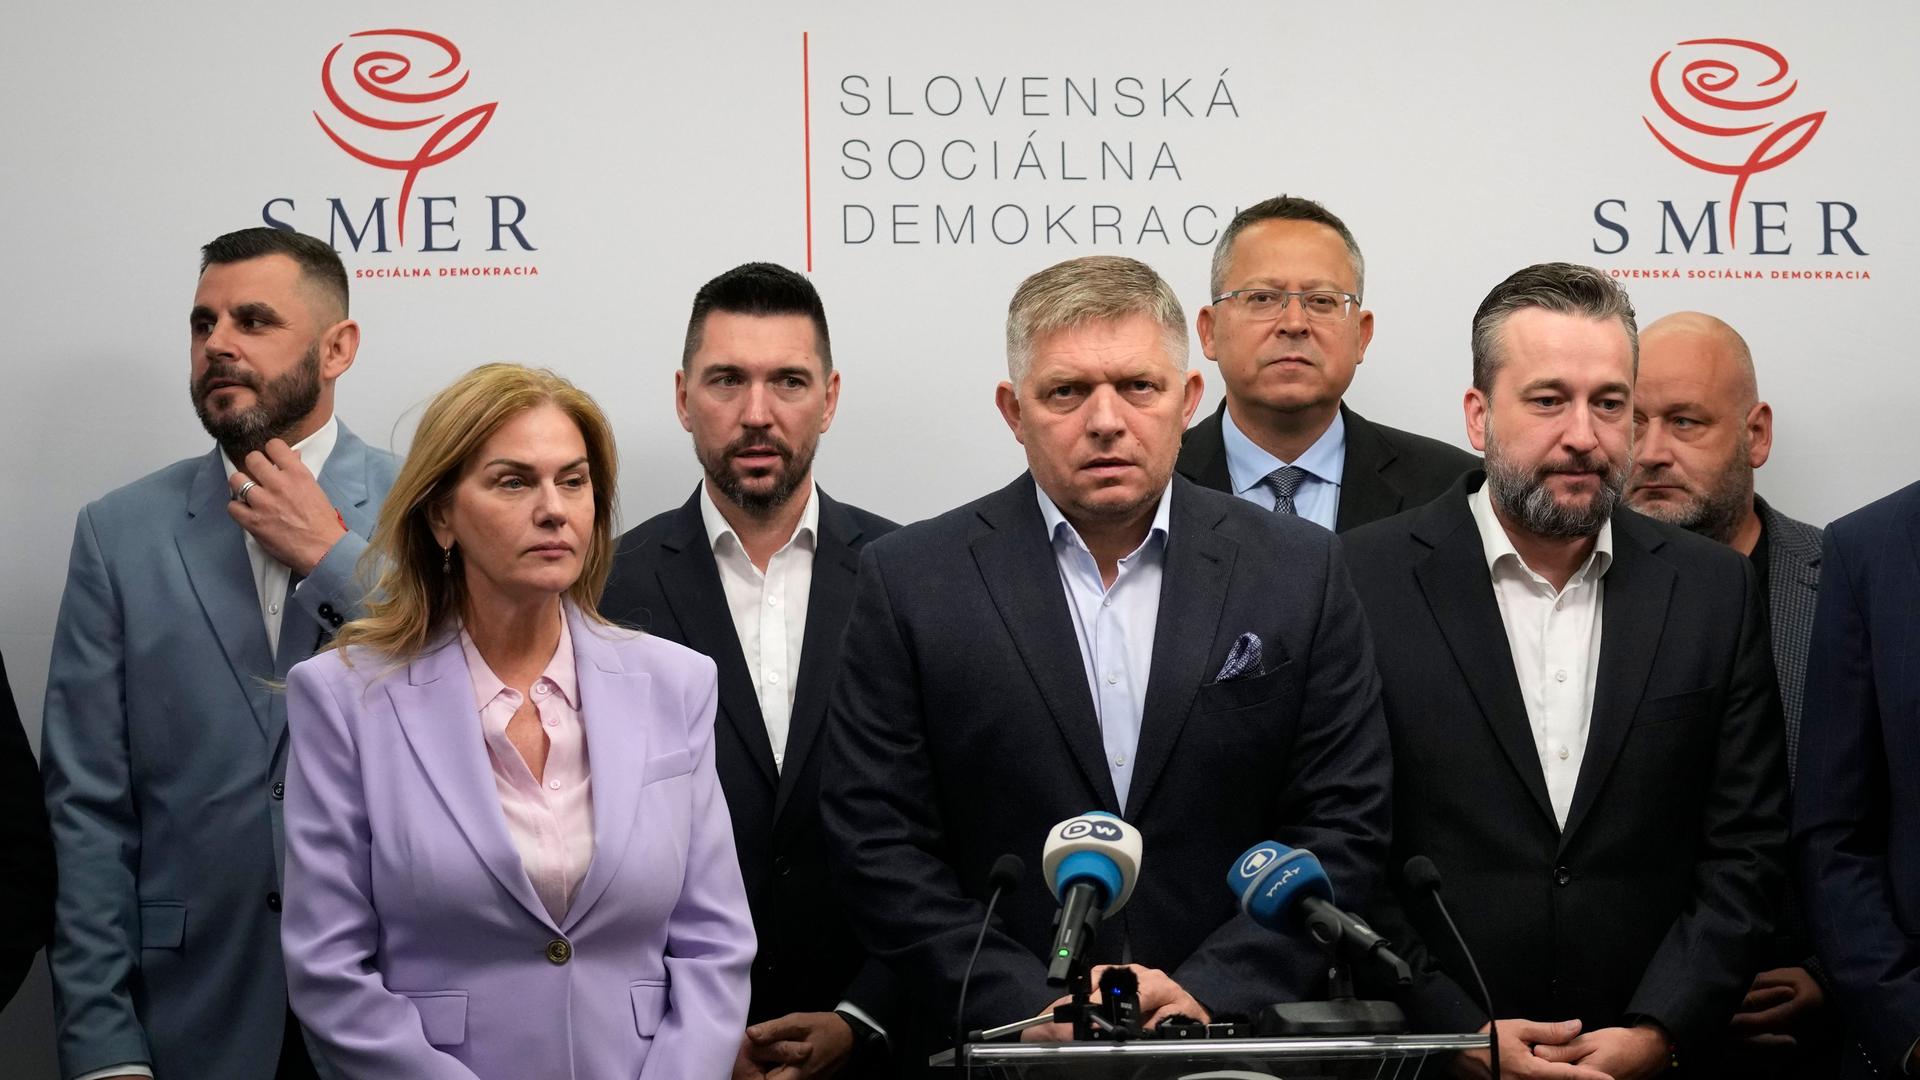 Slowakei, Bratislava: Robert Fico (M), Vorsitzender der Partei Smer-Sozialdemokratie, spricht auf einer Pressekonferenz über die Ergebnisse der vorgezogenen Parlamentswahlen.